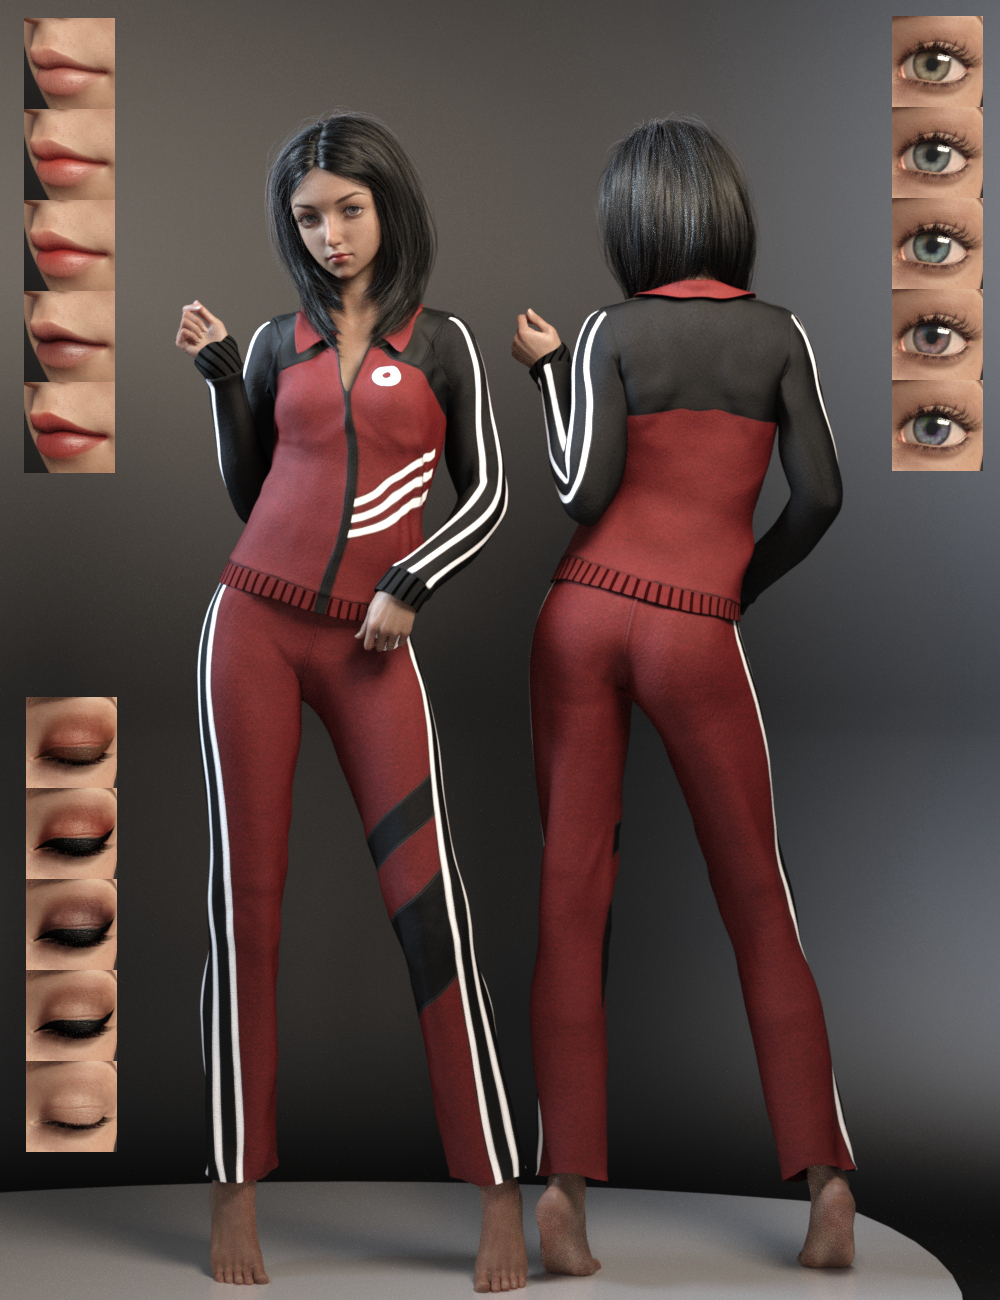 Reiko for Genesis 8 Female by: Ergou, 3D Models by Daz 3D